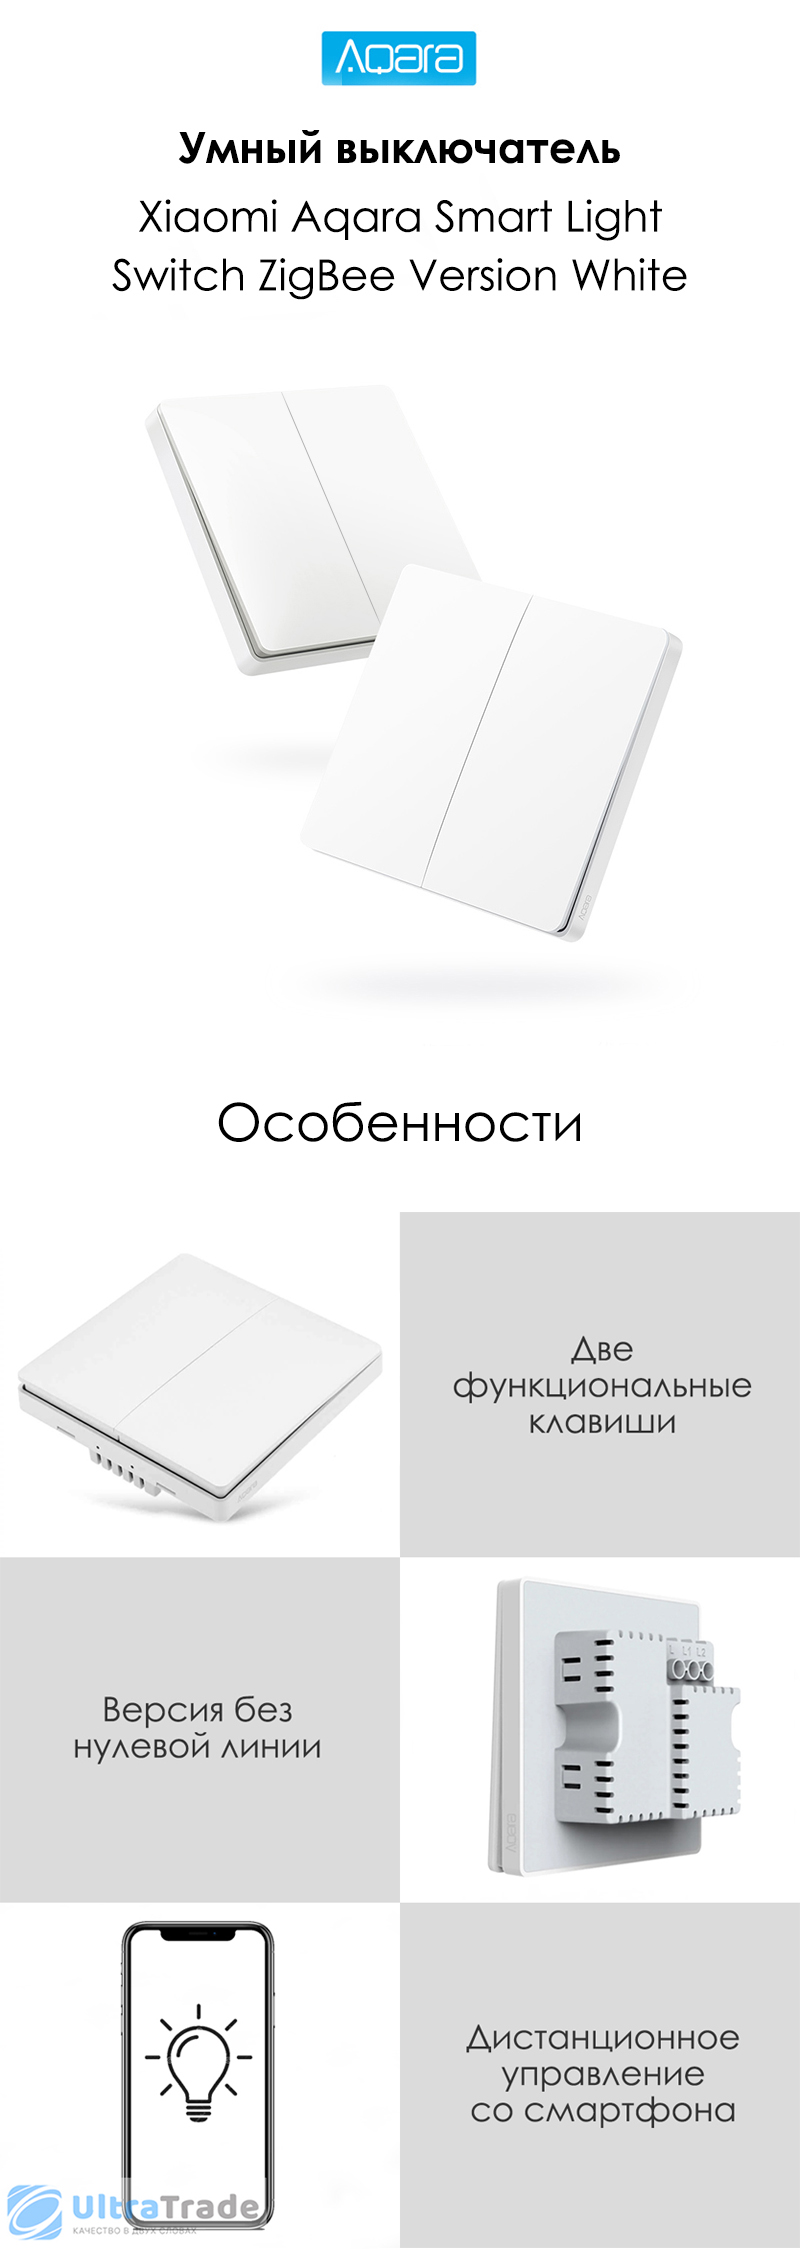 Умный выключатель Xiaomi Aqara Smart Light Switch ZigBee Version (Двойной без нулевой линии) White (QBKG03LM)